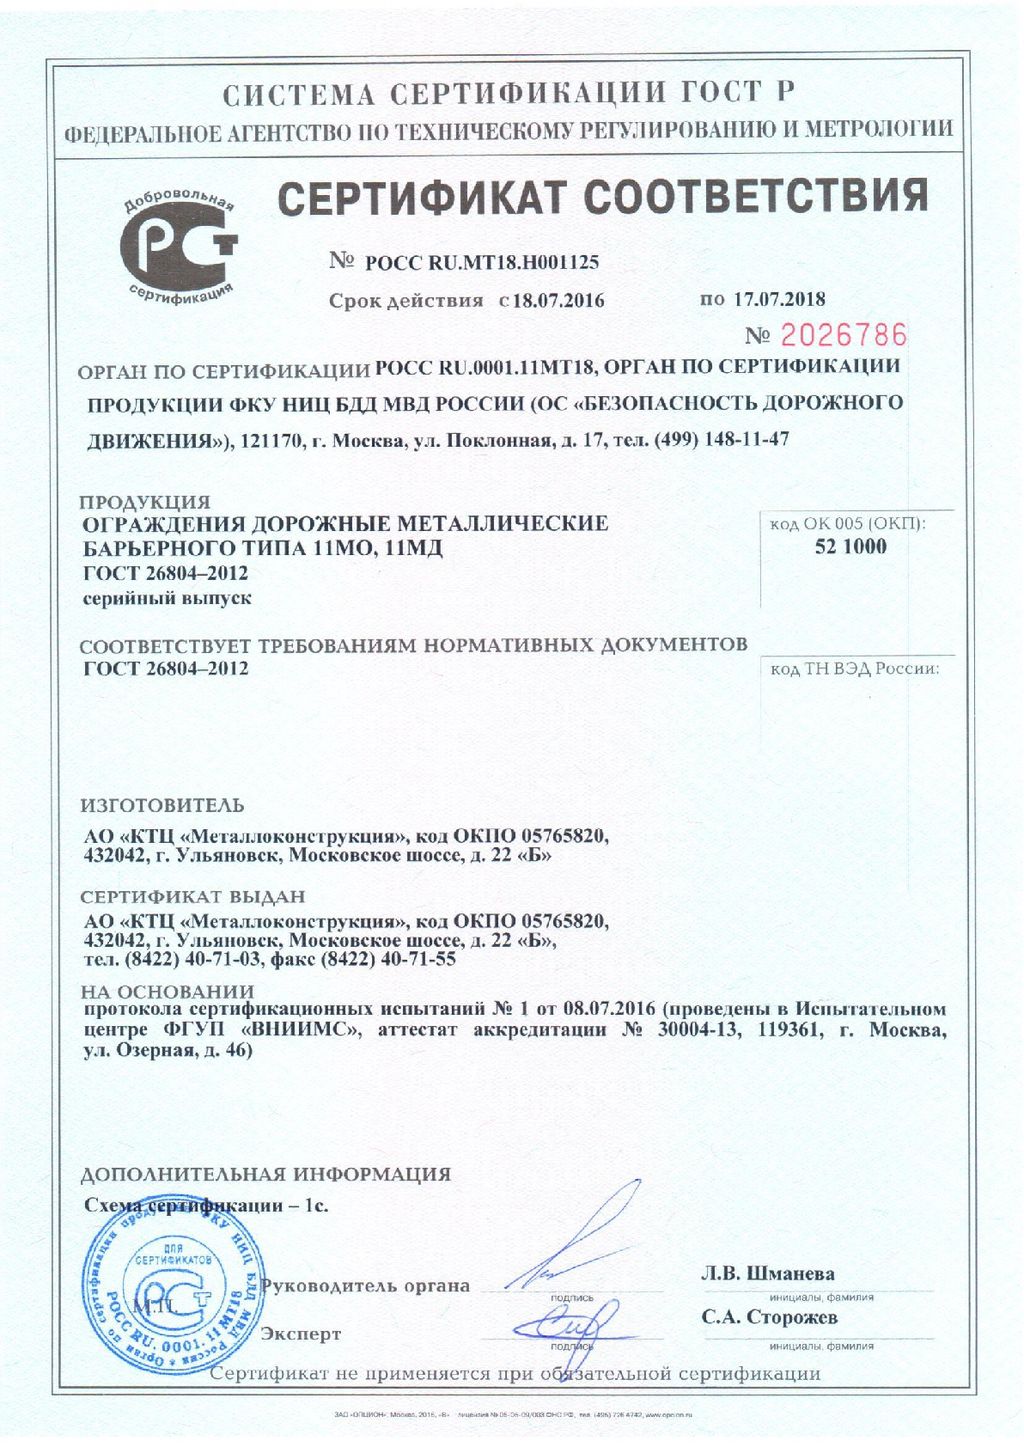 Сертификат соответствия №2026786, КТЦ Металлоконструкция